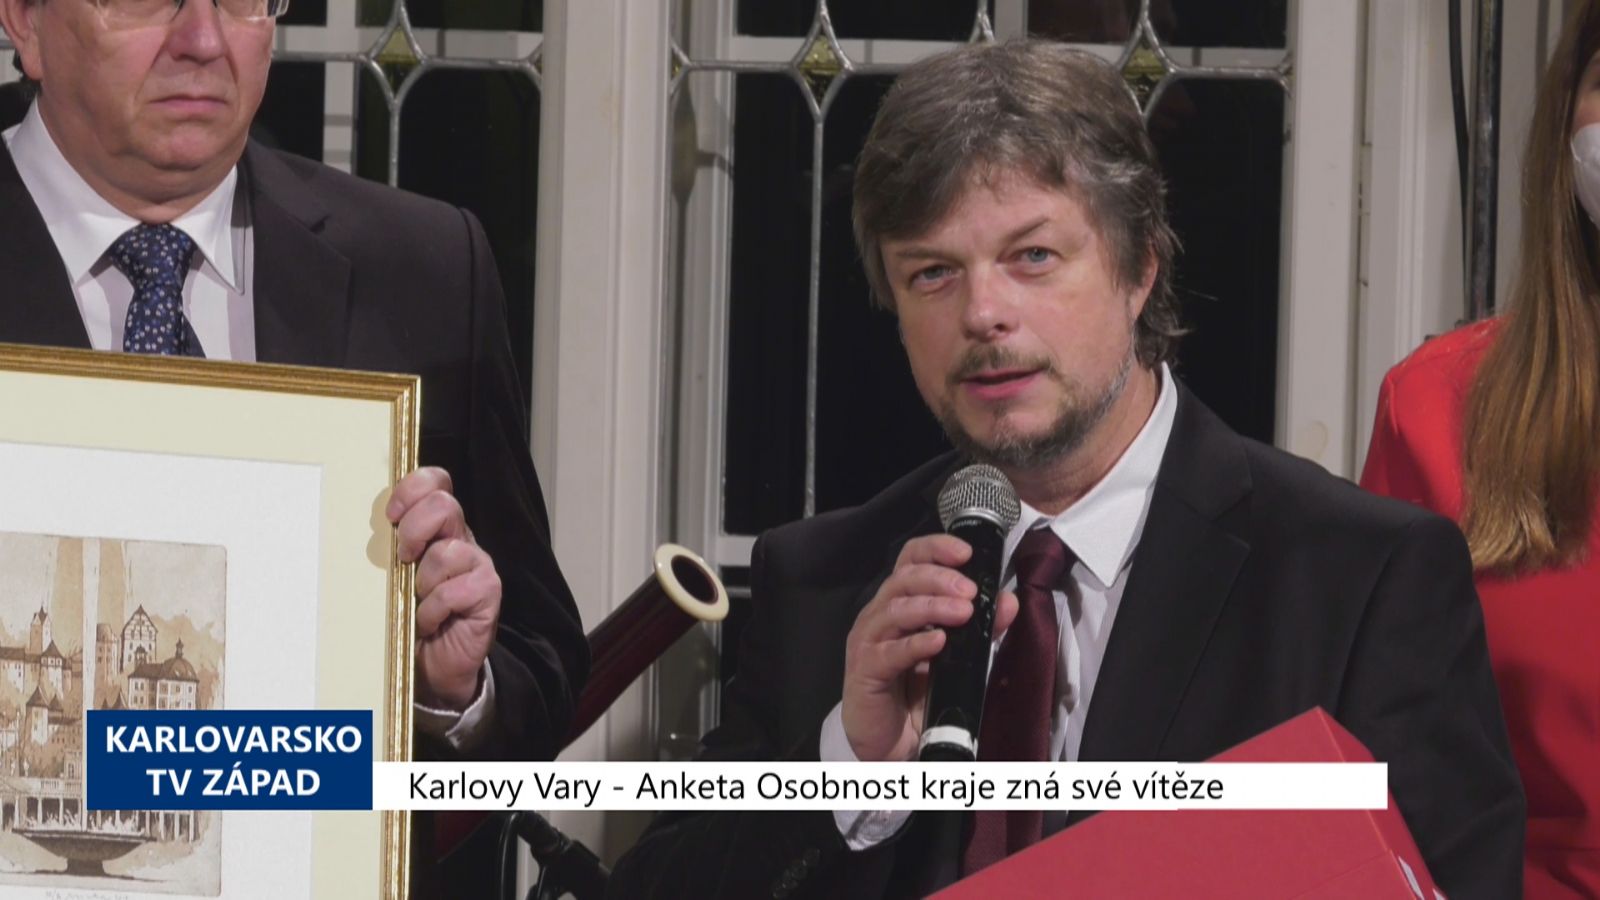 Karlovy Vary: Anketa Osobnost kraje zná své vítěze (TV Západ)